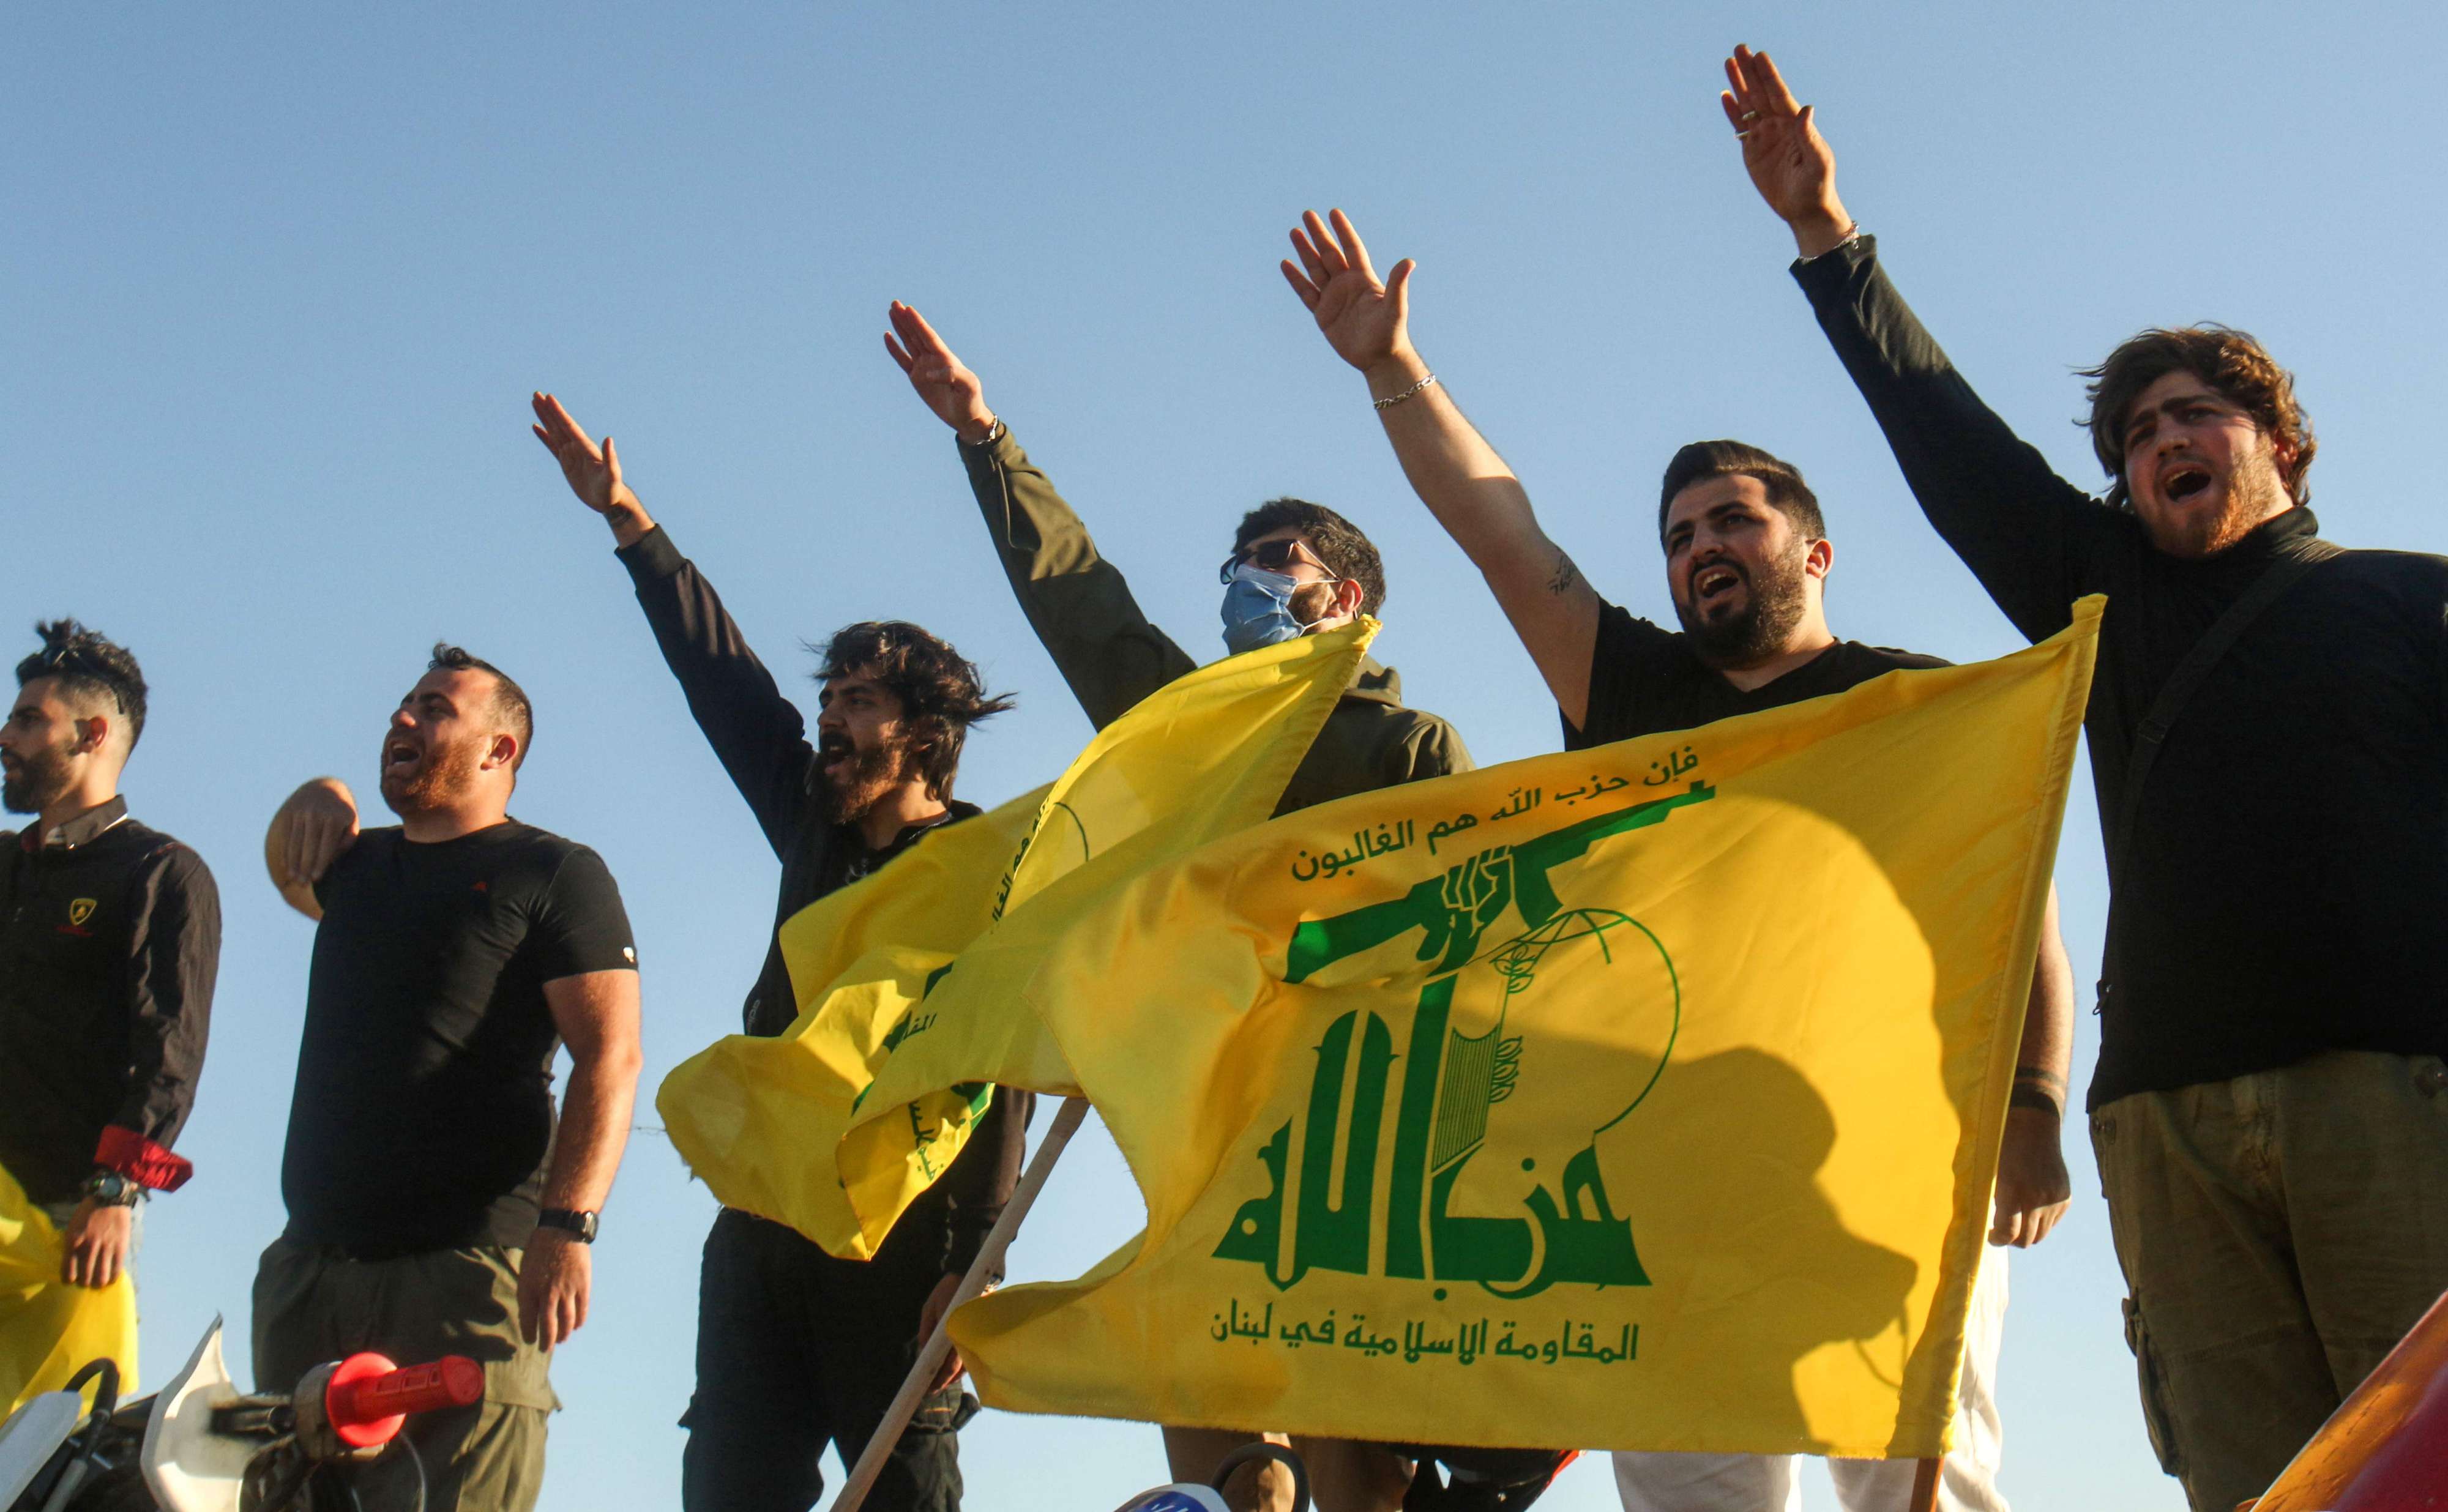 حزب الله: نحن الان في موقع الدفاع